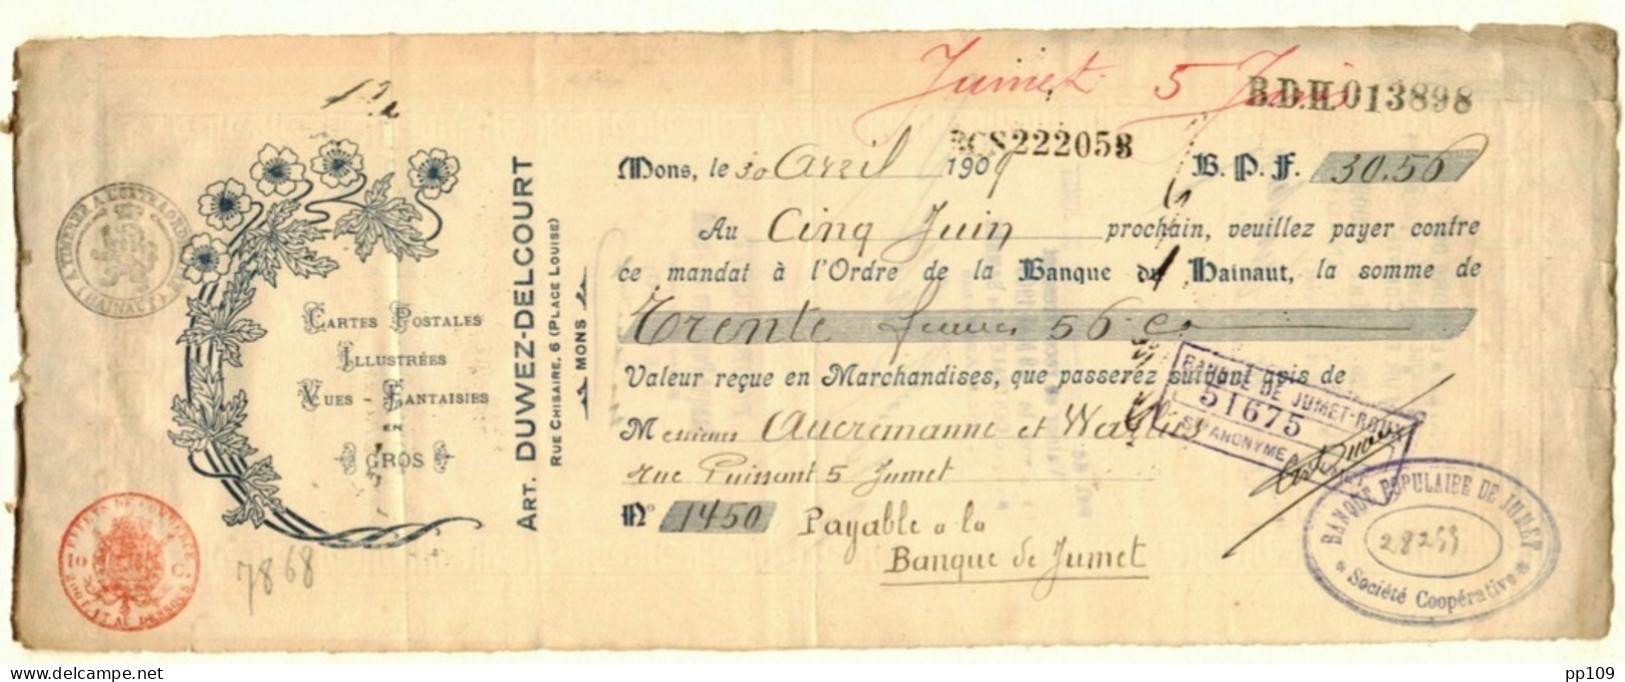 MONS Place Louise, 6 Mandat   Ill. Cartes Postales + Vues Arthur DUWEZ DELCOURT 30 IV 1909 - Documents